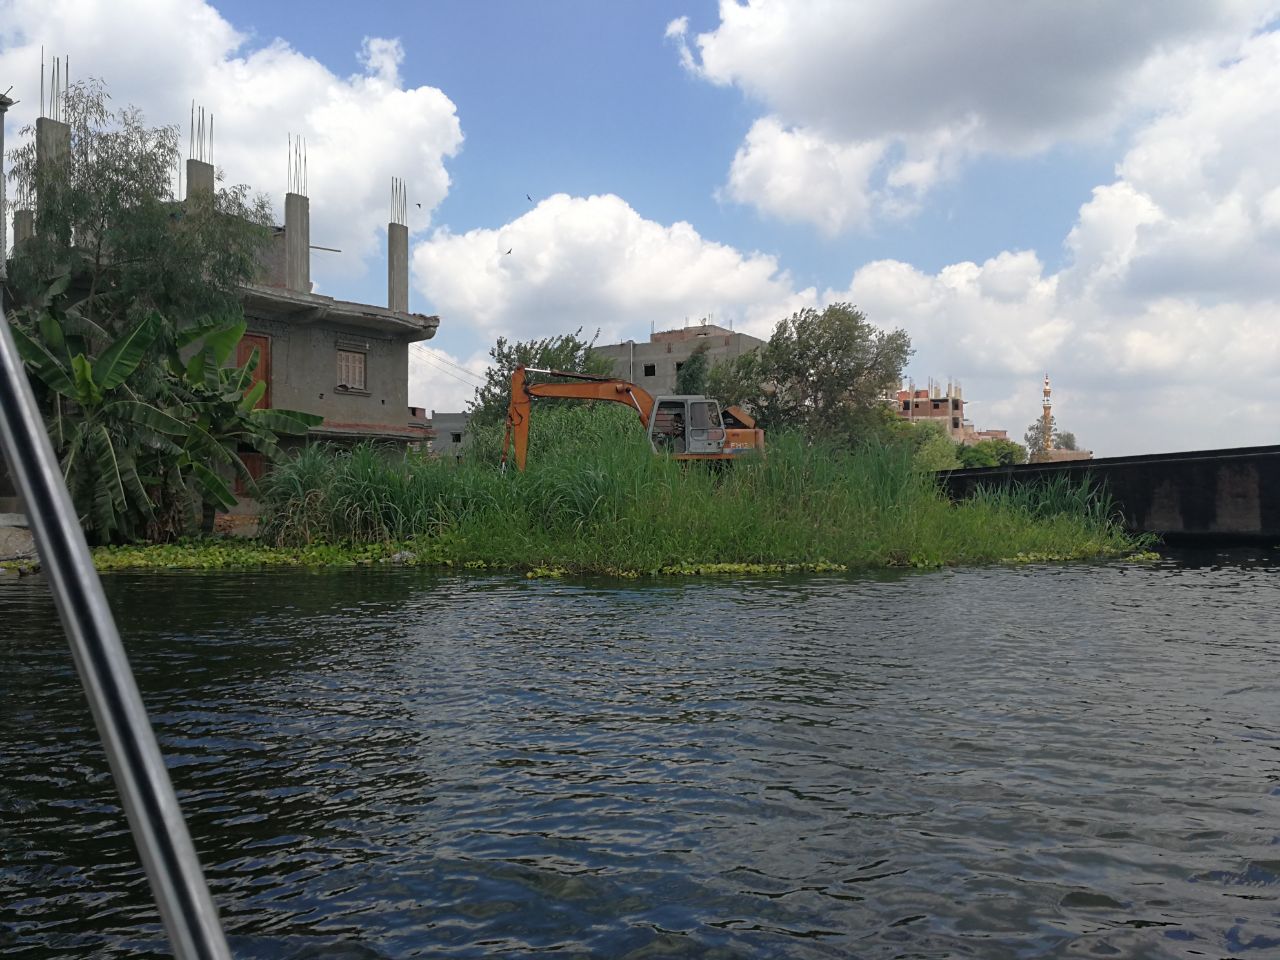   إزالة مباني متعدية على نهر النيل